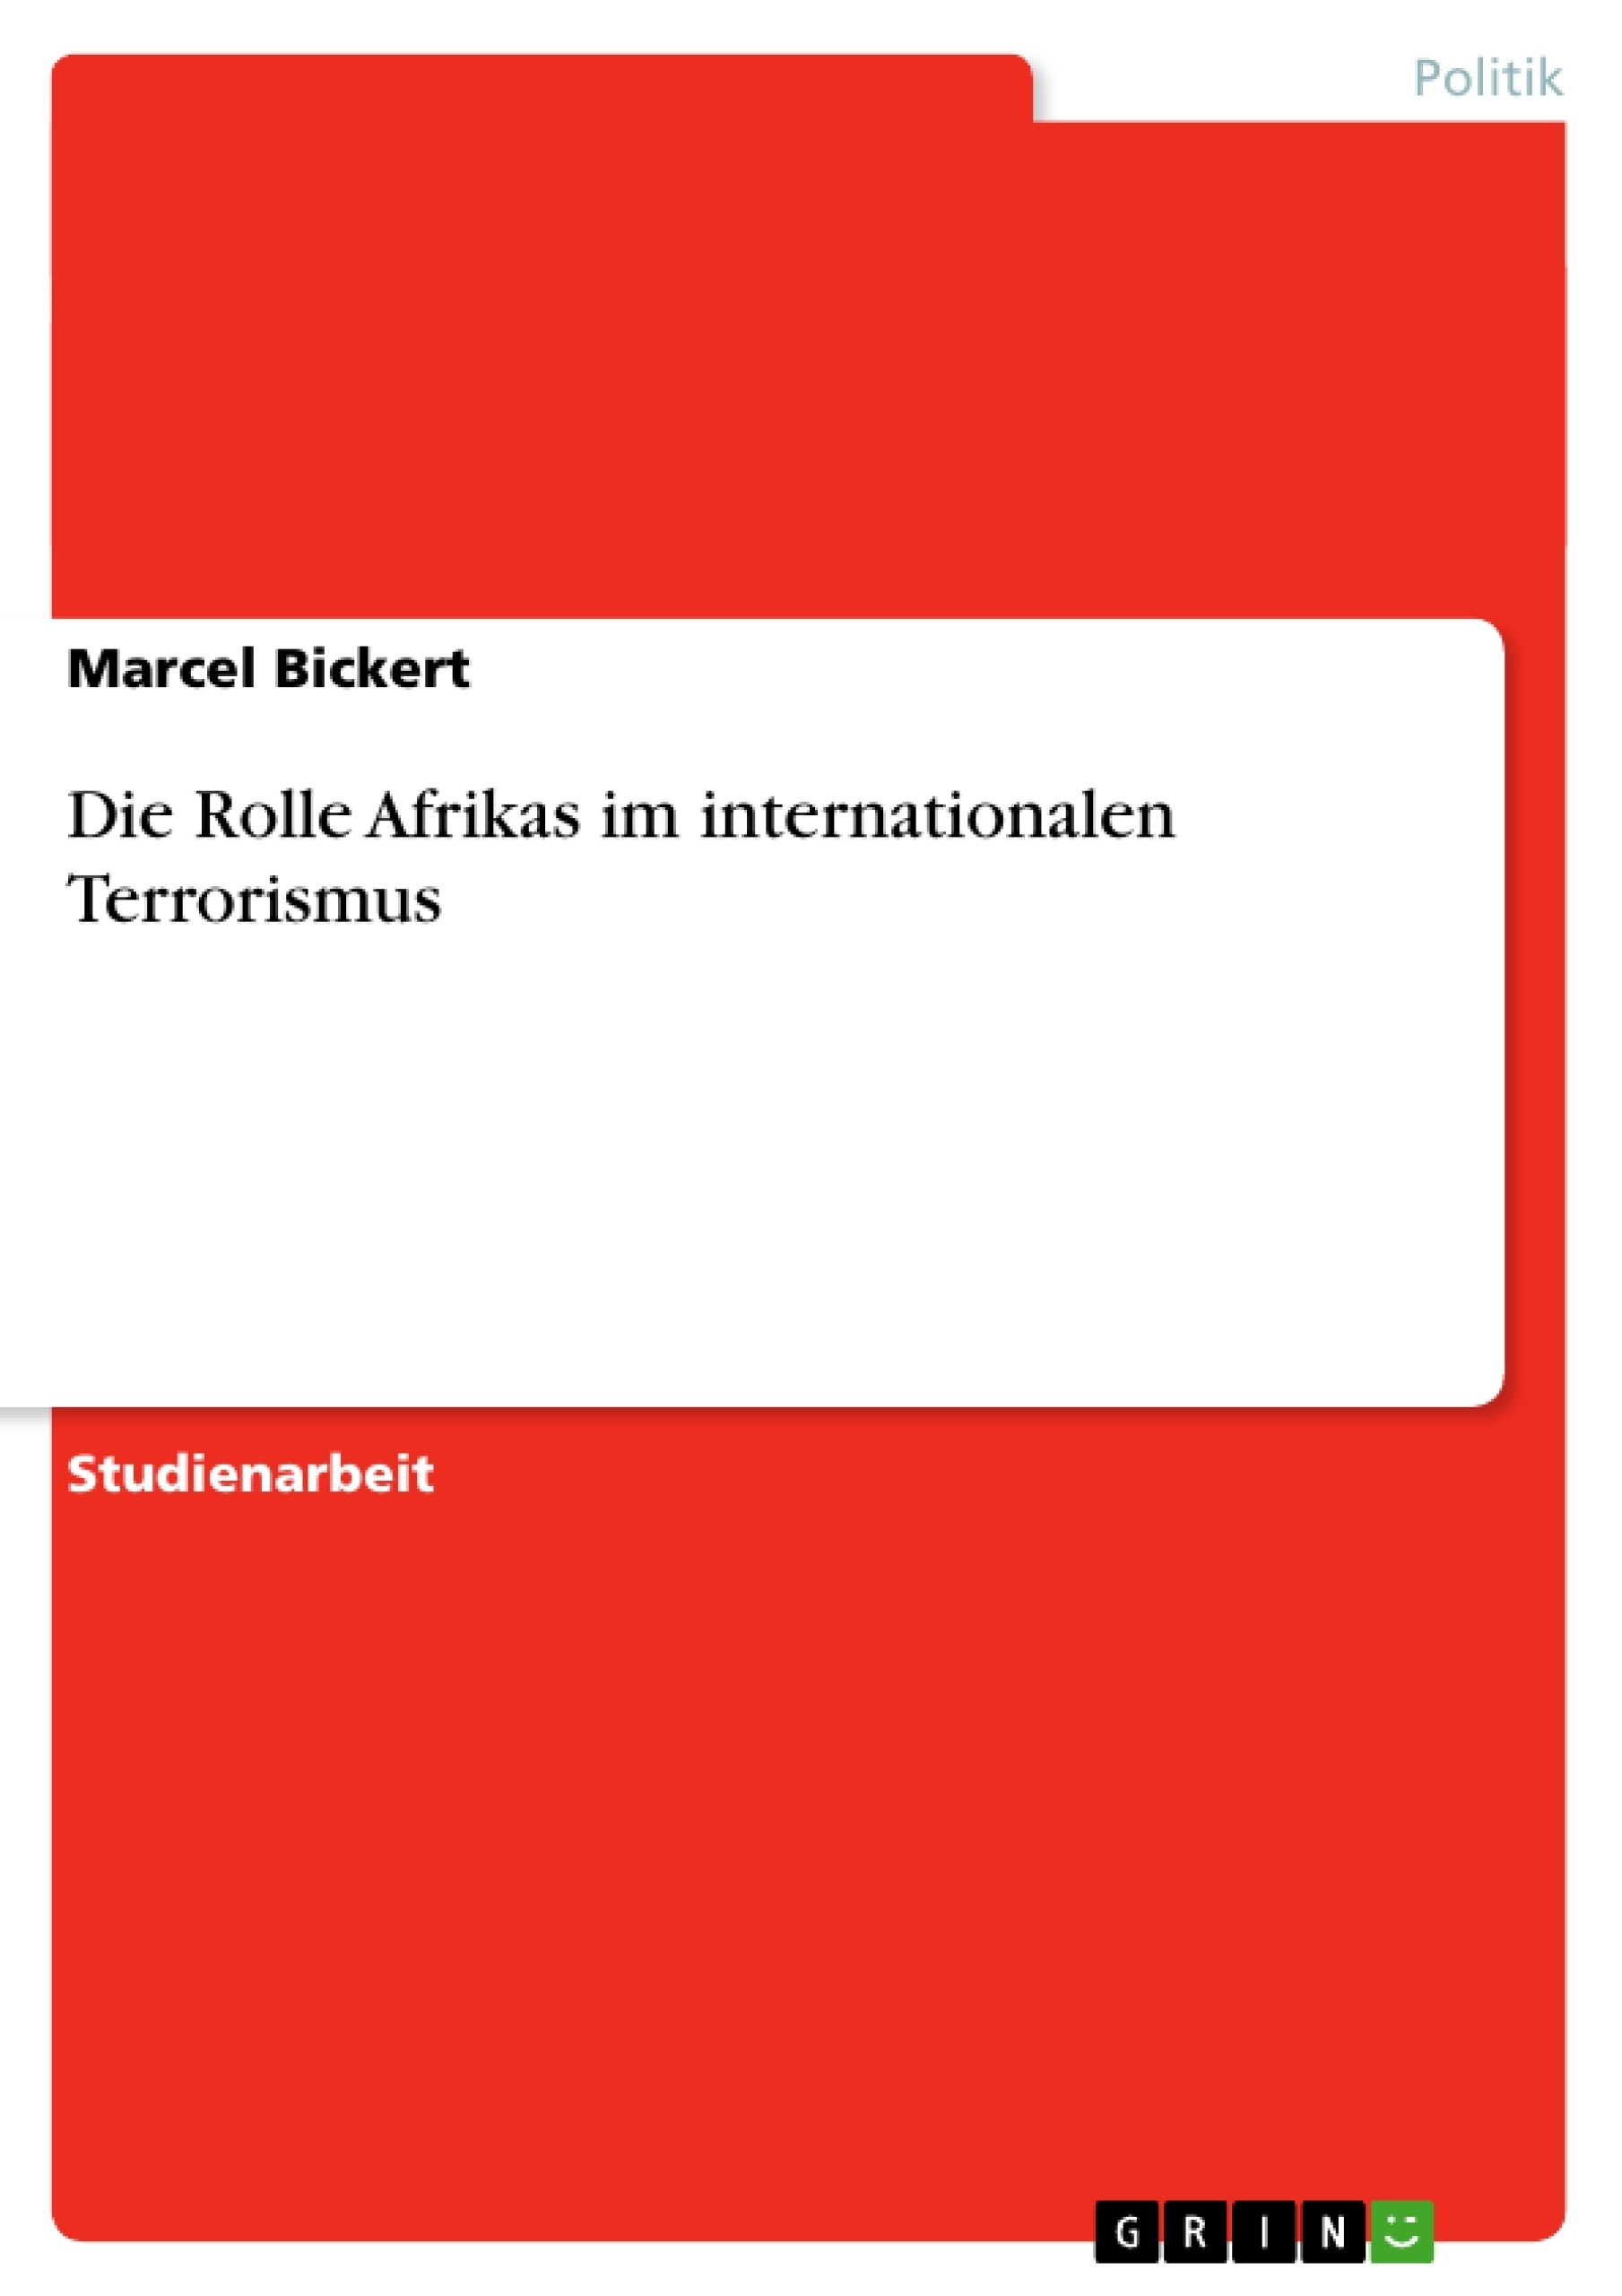 Title: Die Rolle Afrikas im internationalen Terrorismus